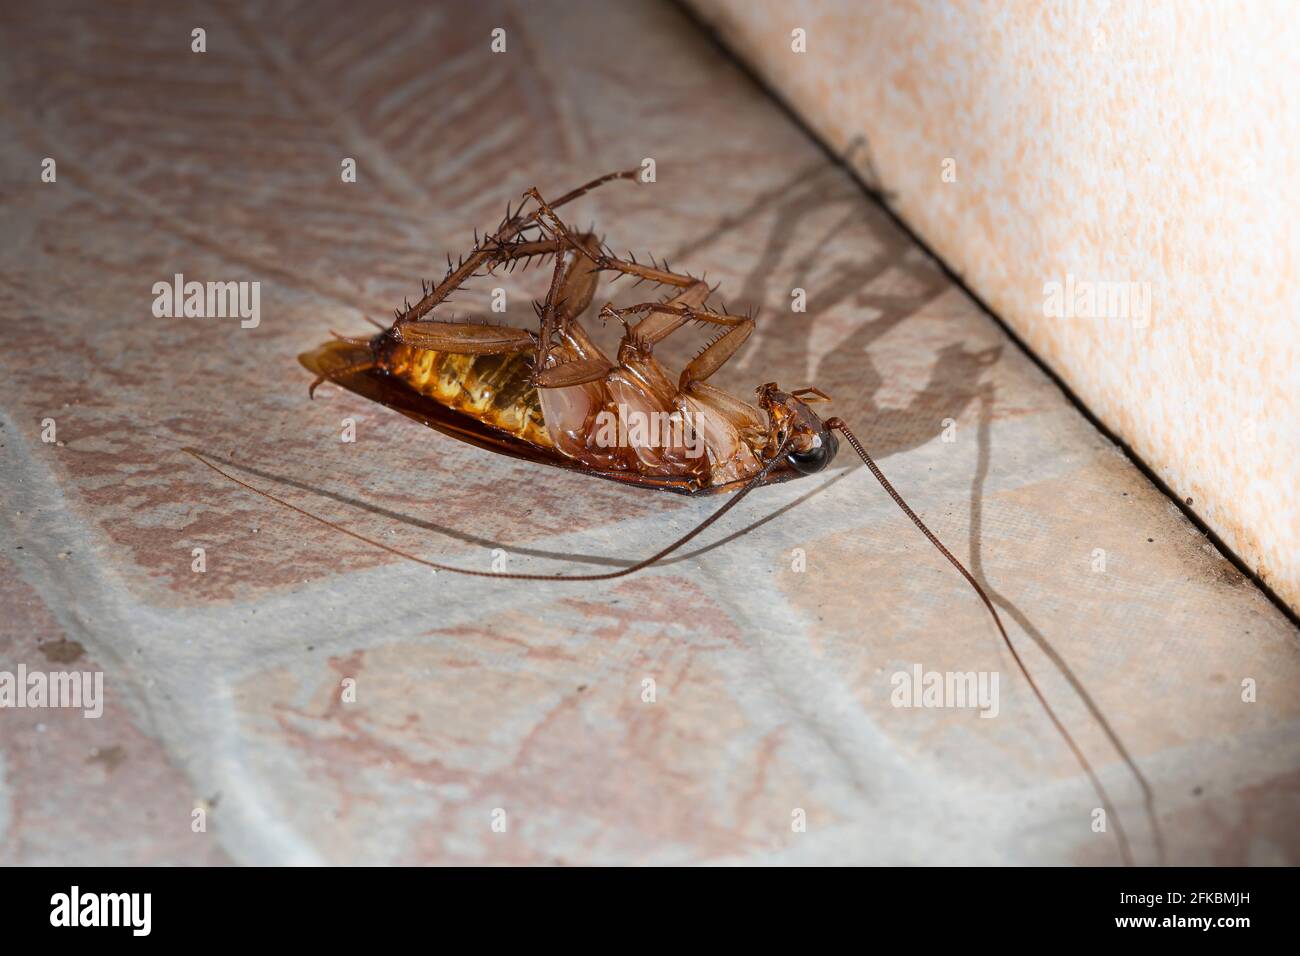 La cucaracha estaba muerta en el suelo del baño de la casa. Foto de stock